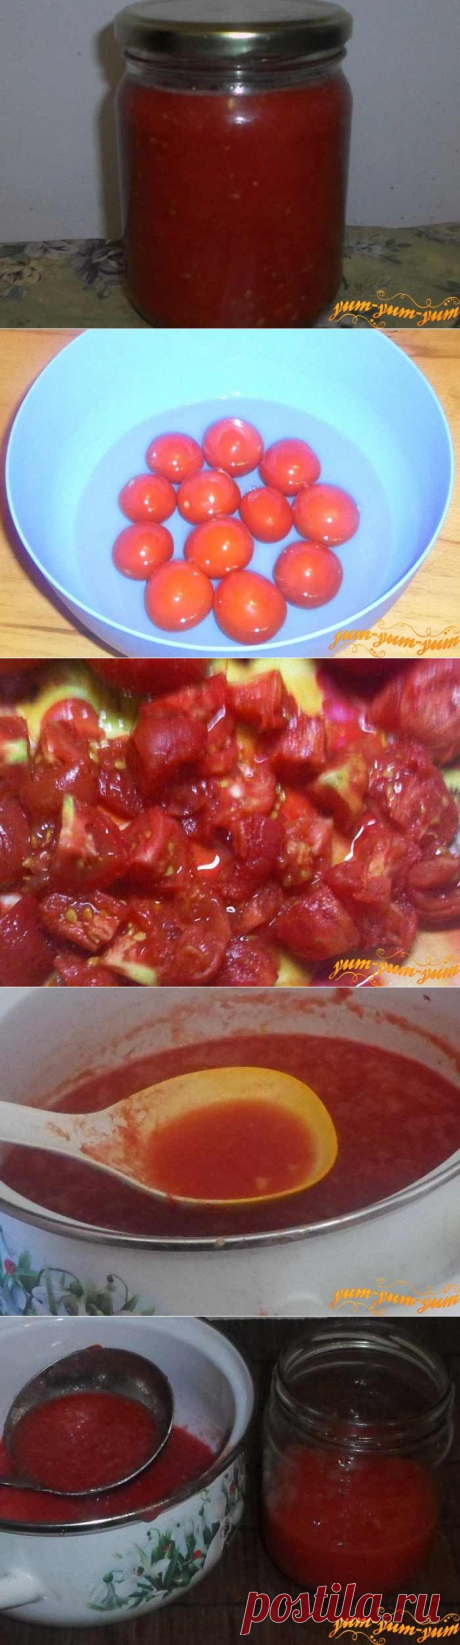 Как приготовить консервированный томатный соус на зиму: как сделать домашнюю заготовку из помидор - рецепт с видео